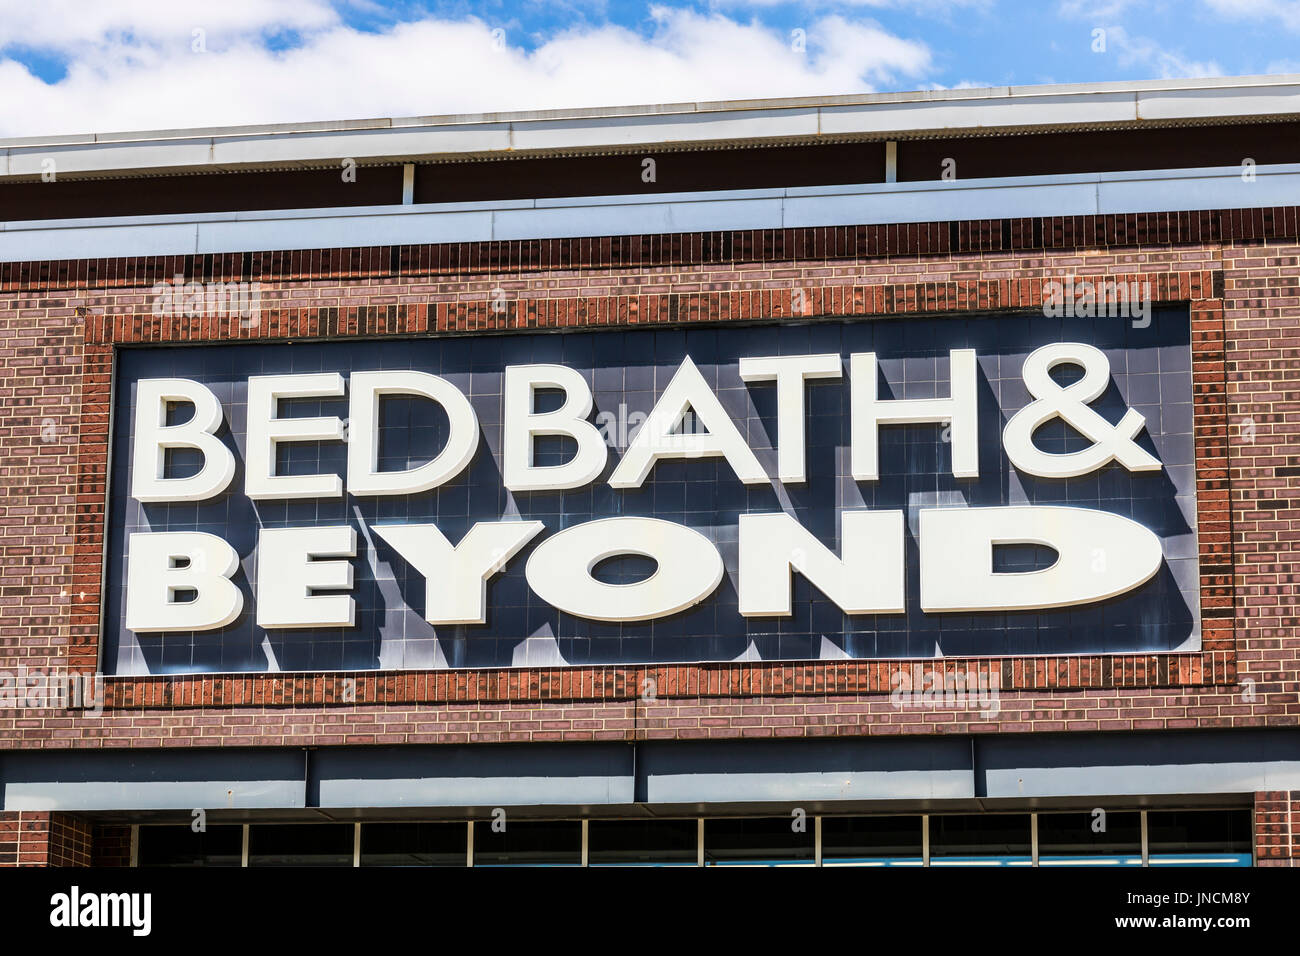 Indianapolis - ca. Juli 2017: Bed Bath & Beyond Retail-Standort. Bett Bad & Beyond ist eine Kette mit eine abwechslungsreiche Auswahl von Hause waren VI Stockfoto